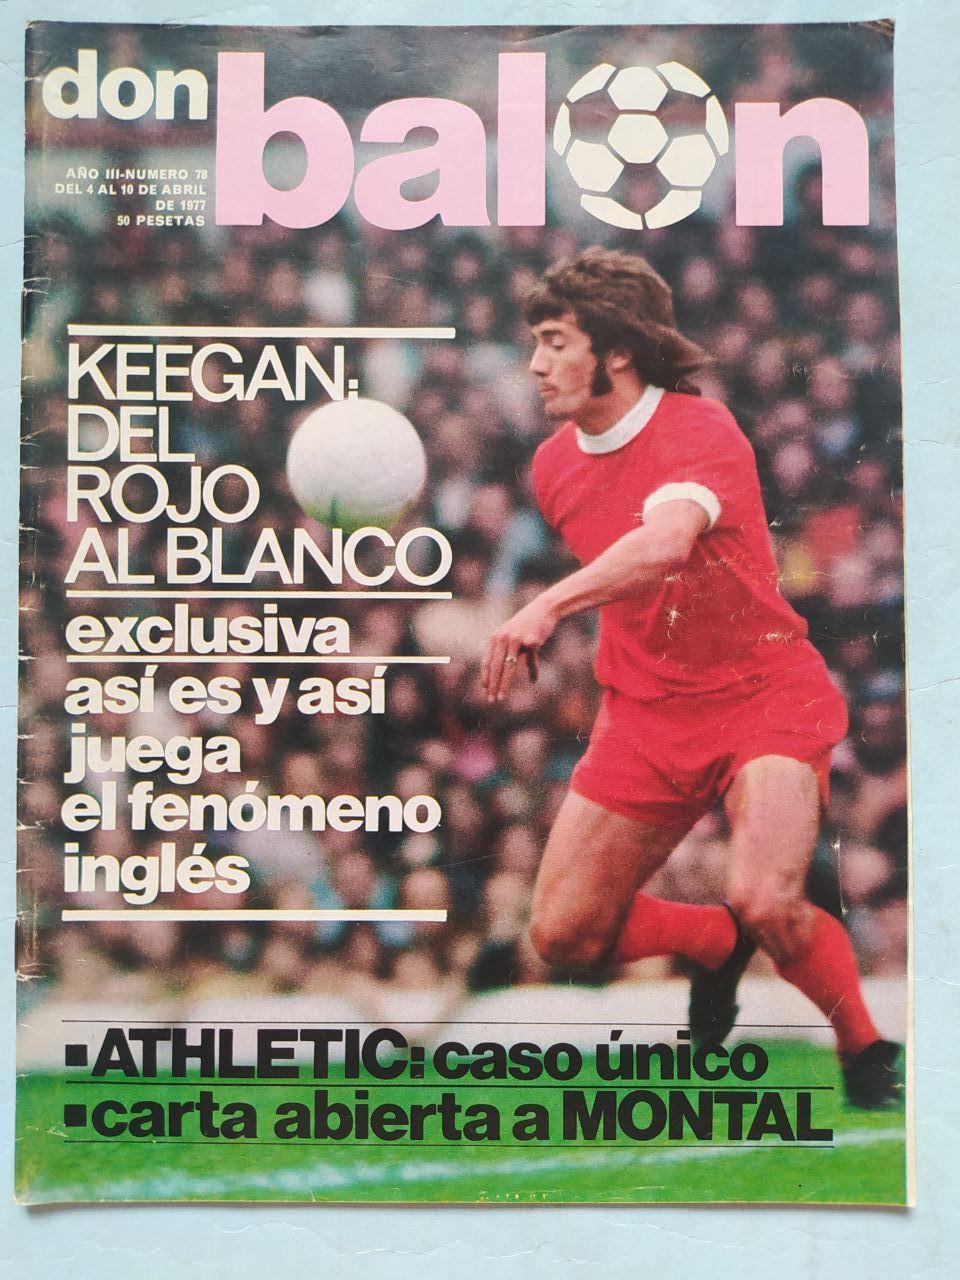 Журнал дон балон don balon 1977 год Испания